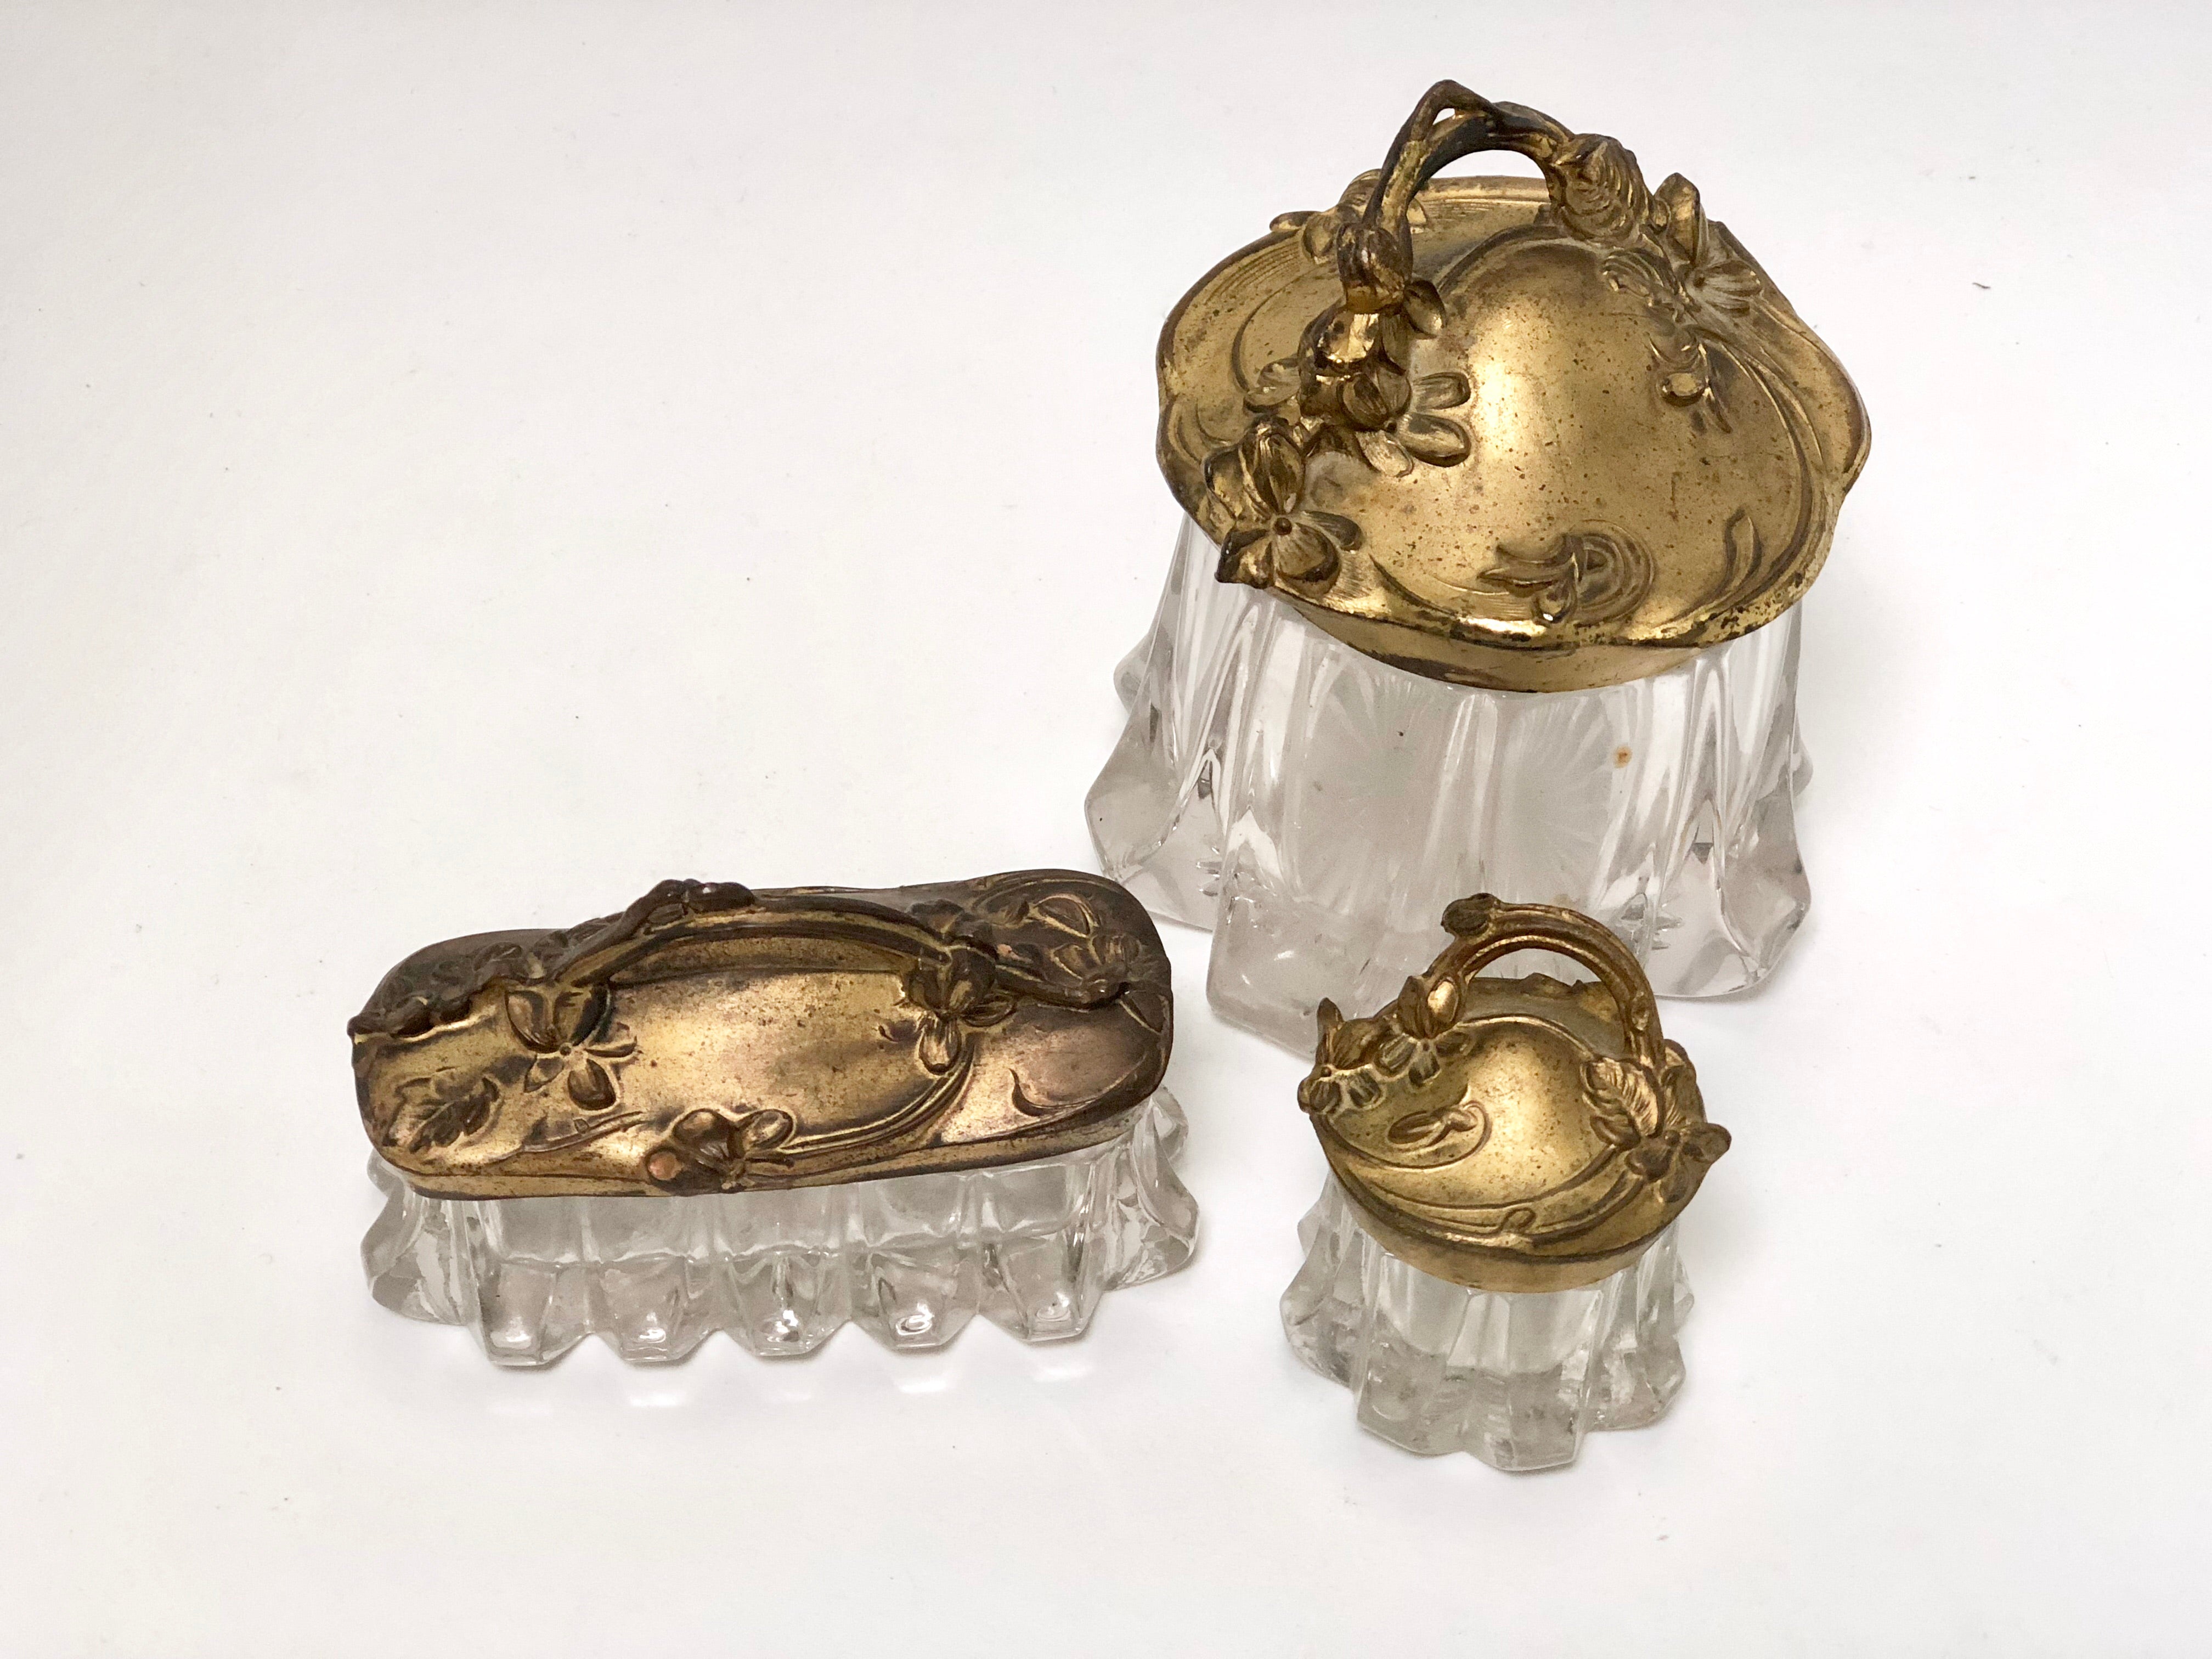 Antique Art Nouveaux Jewelry Boxes - Set of 3